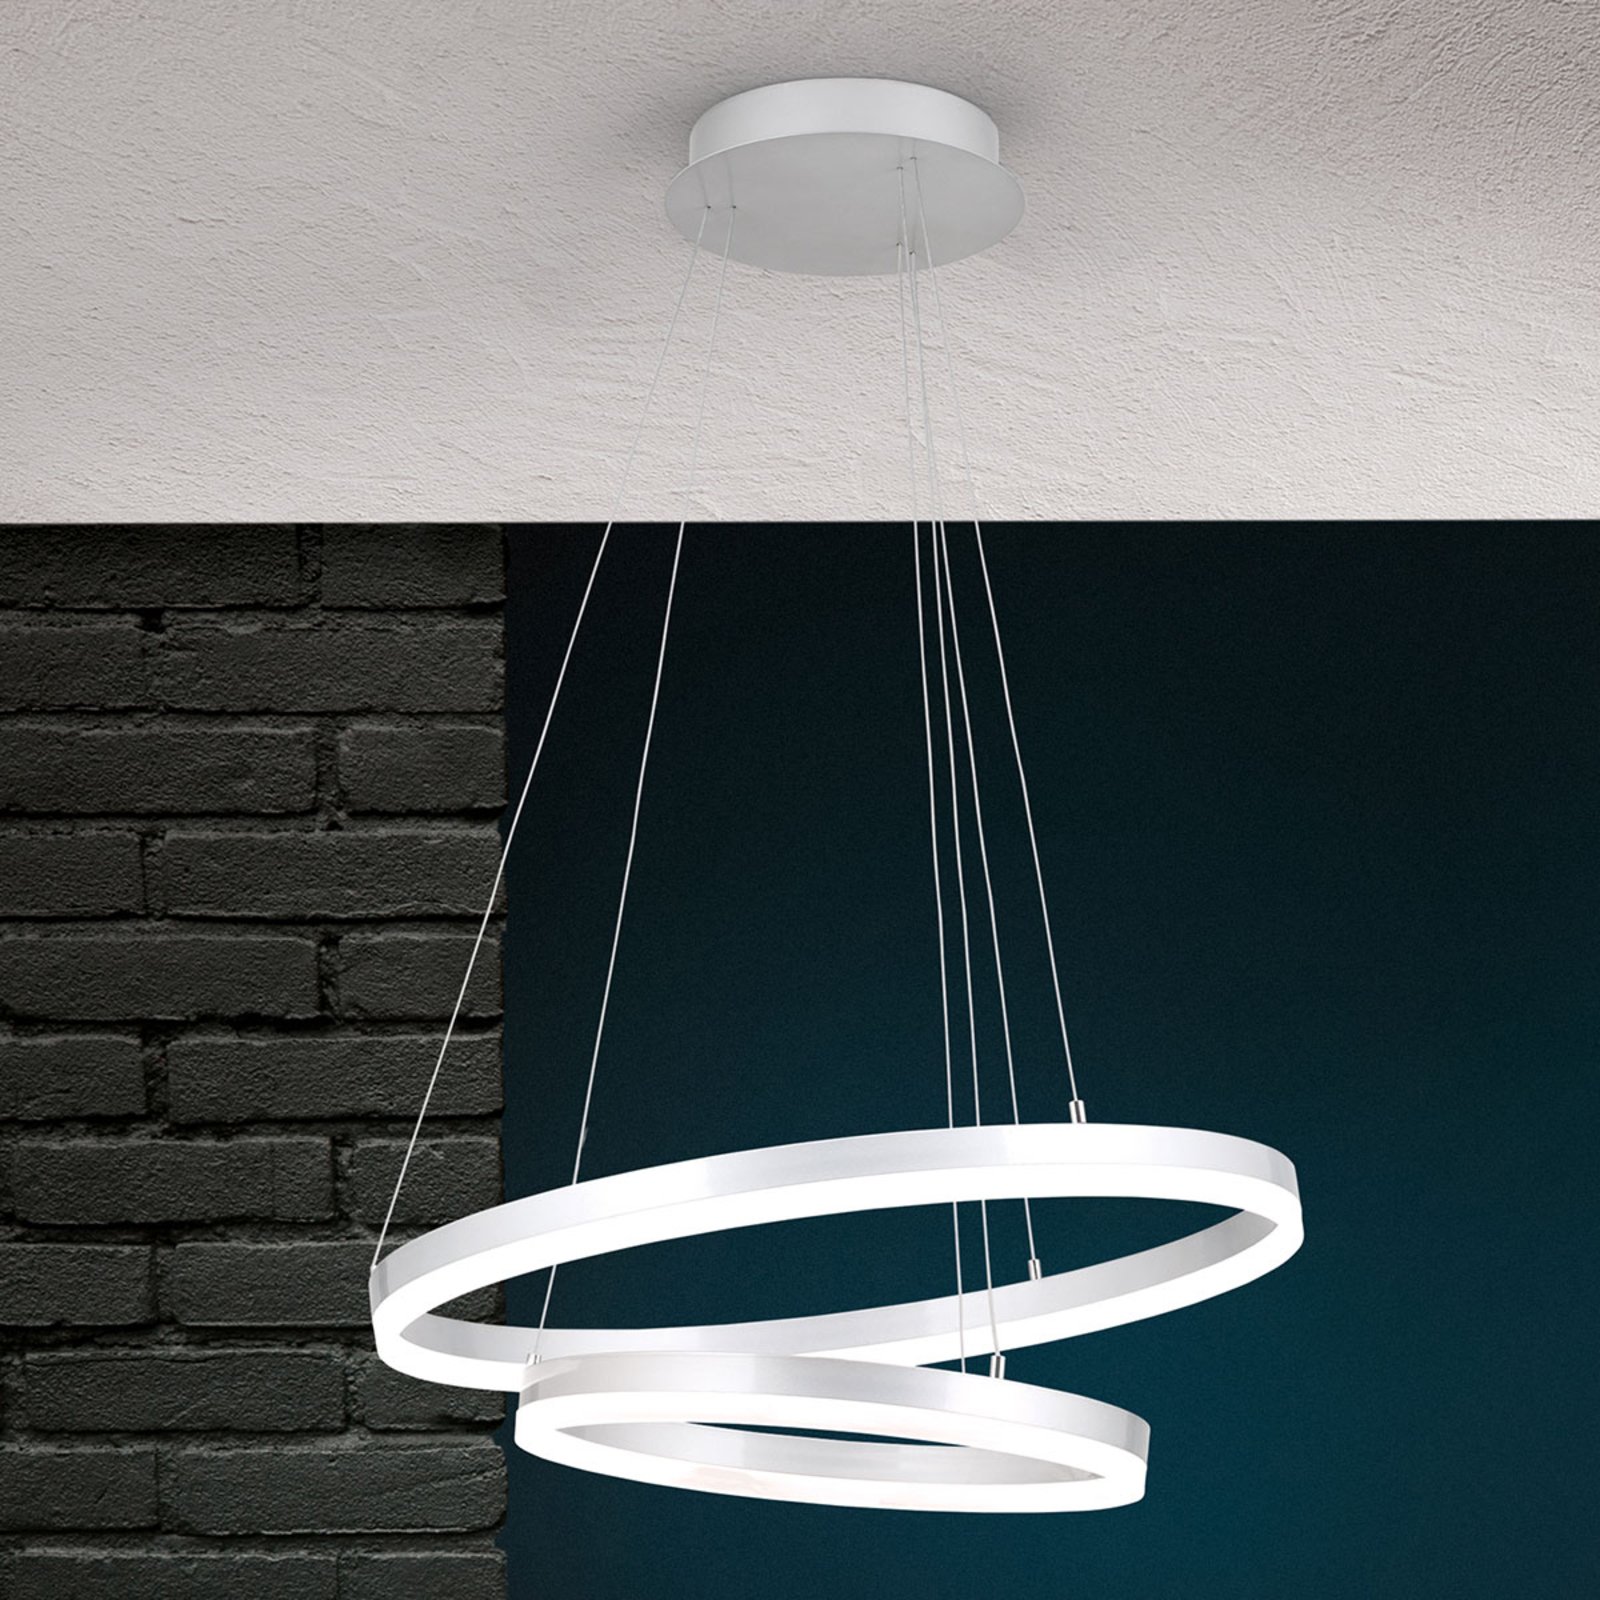 Moderno dizajnirana LED viseća svjetiljka Float